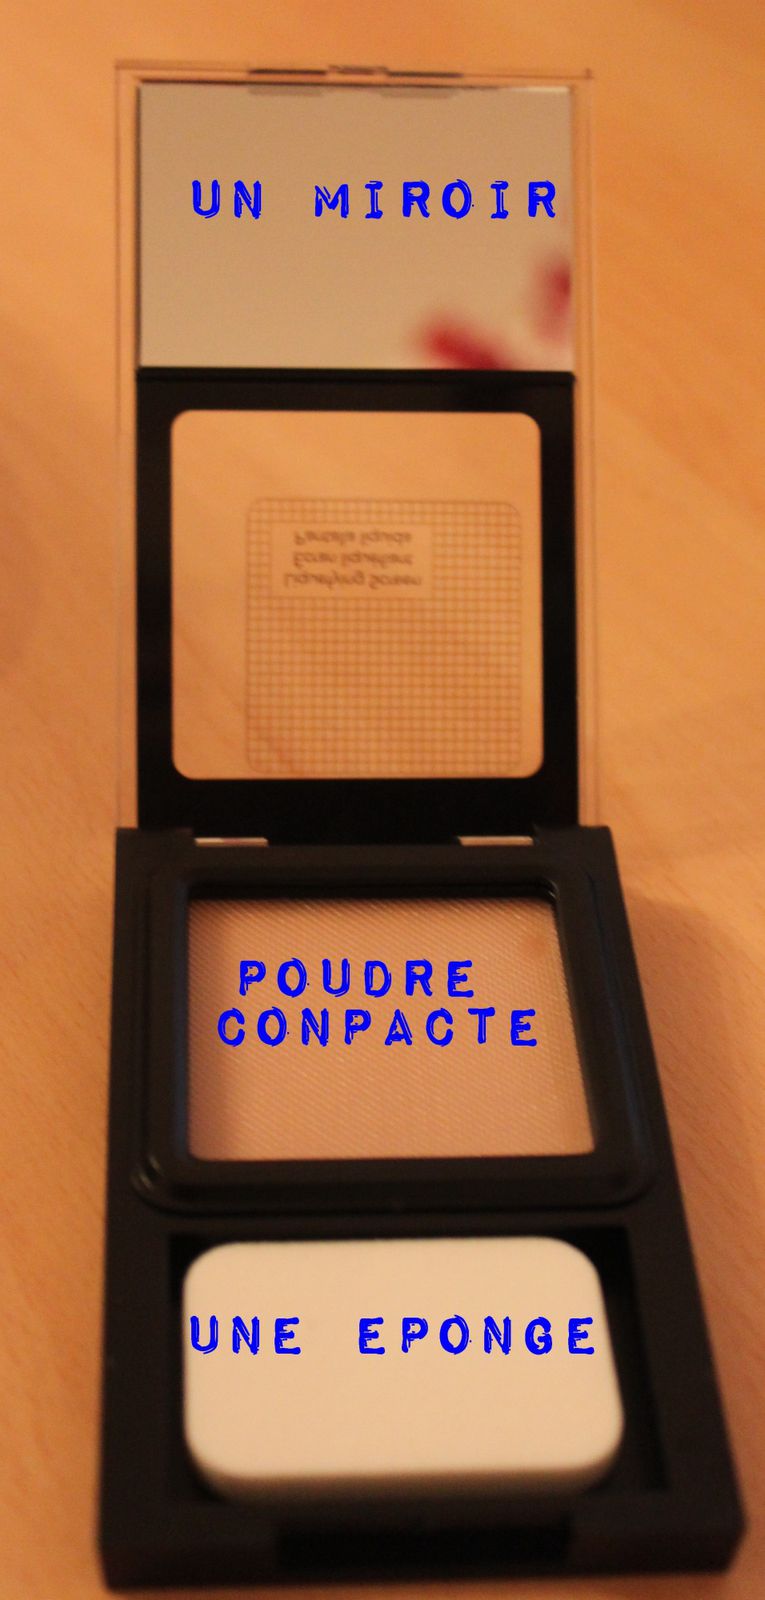 poudre-compacte-copie-1.JPG